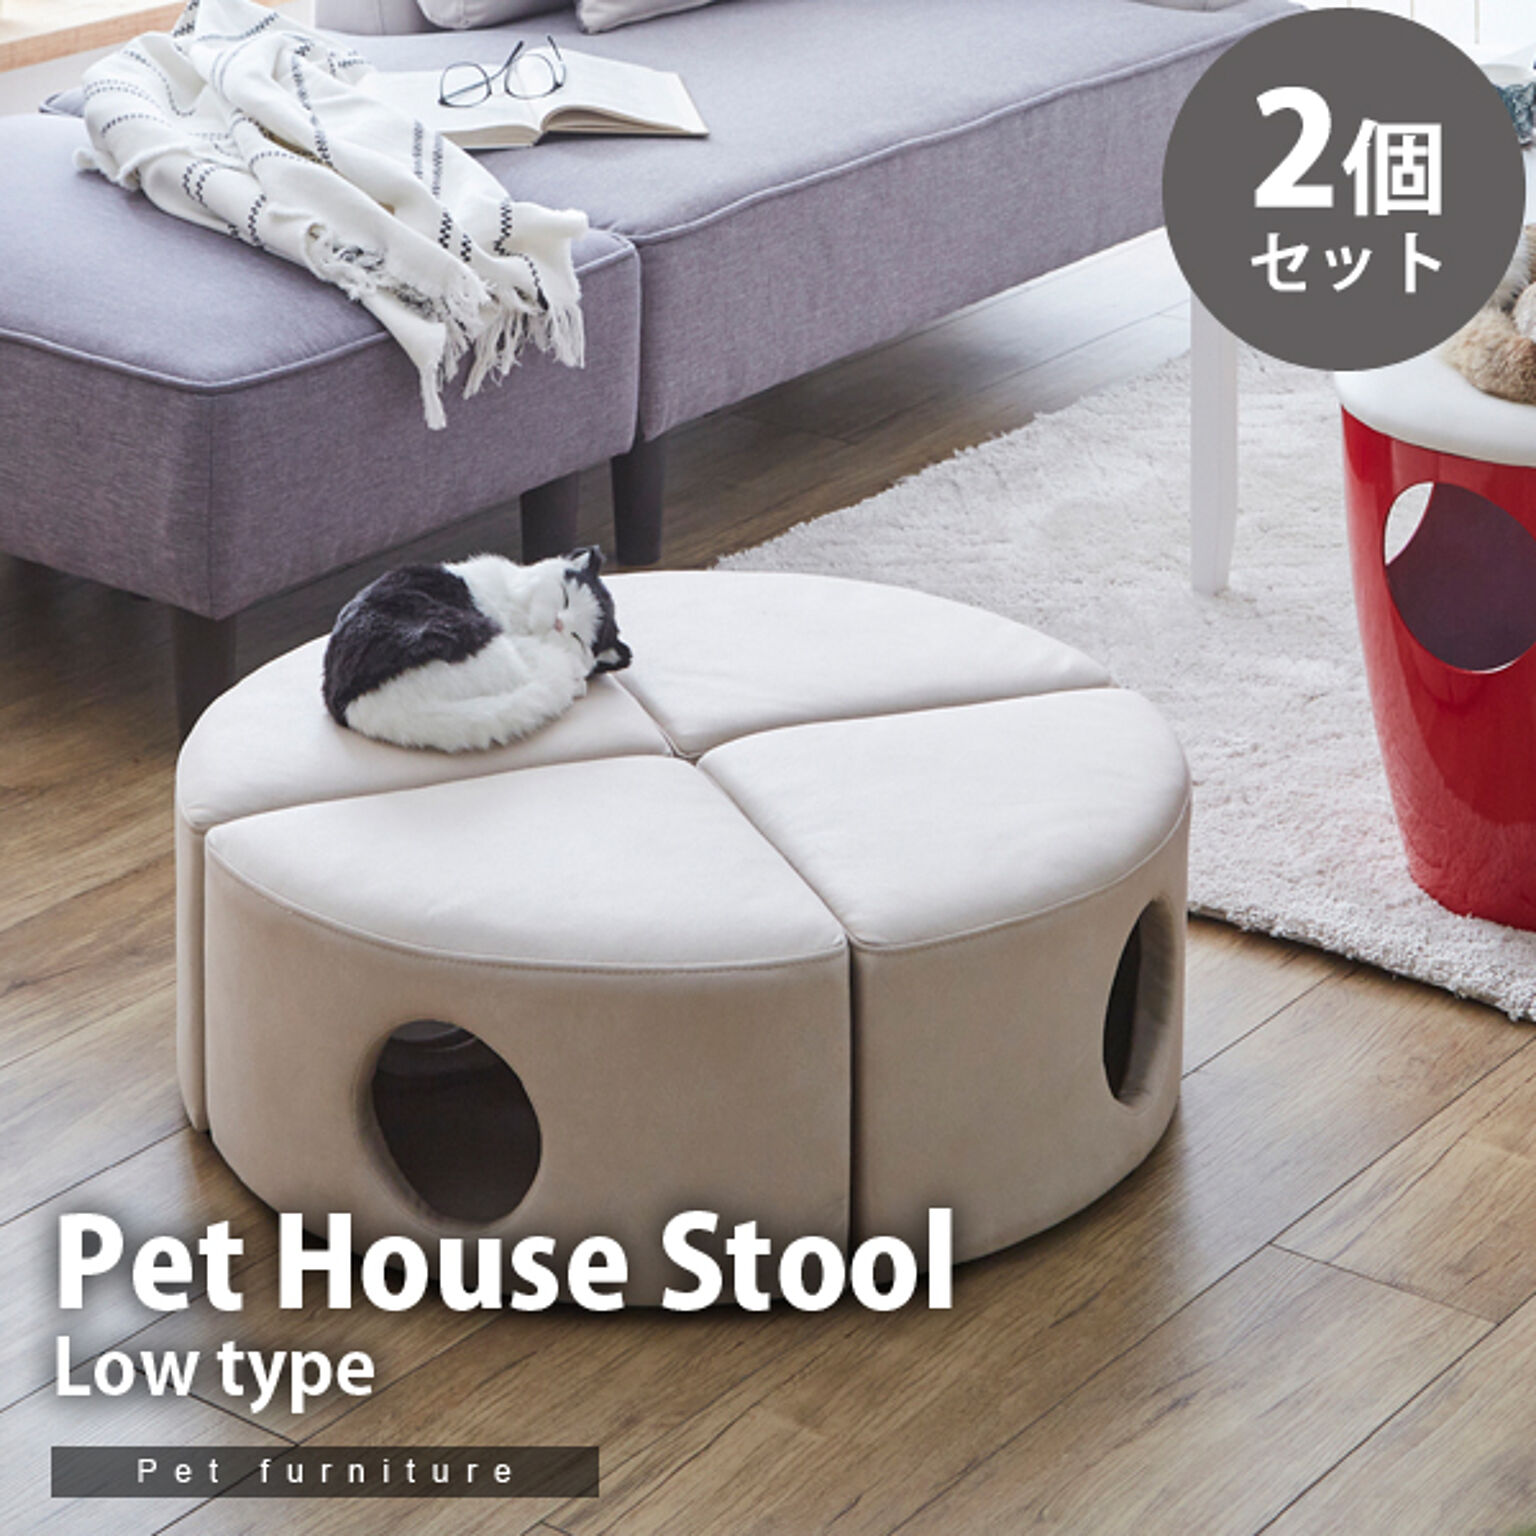 【2個セット】 ペットハウス スツール ロータイプ ペット用 ペット家具 椅子 低め 小屋 トンネル ファブリック 犬 猫 